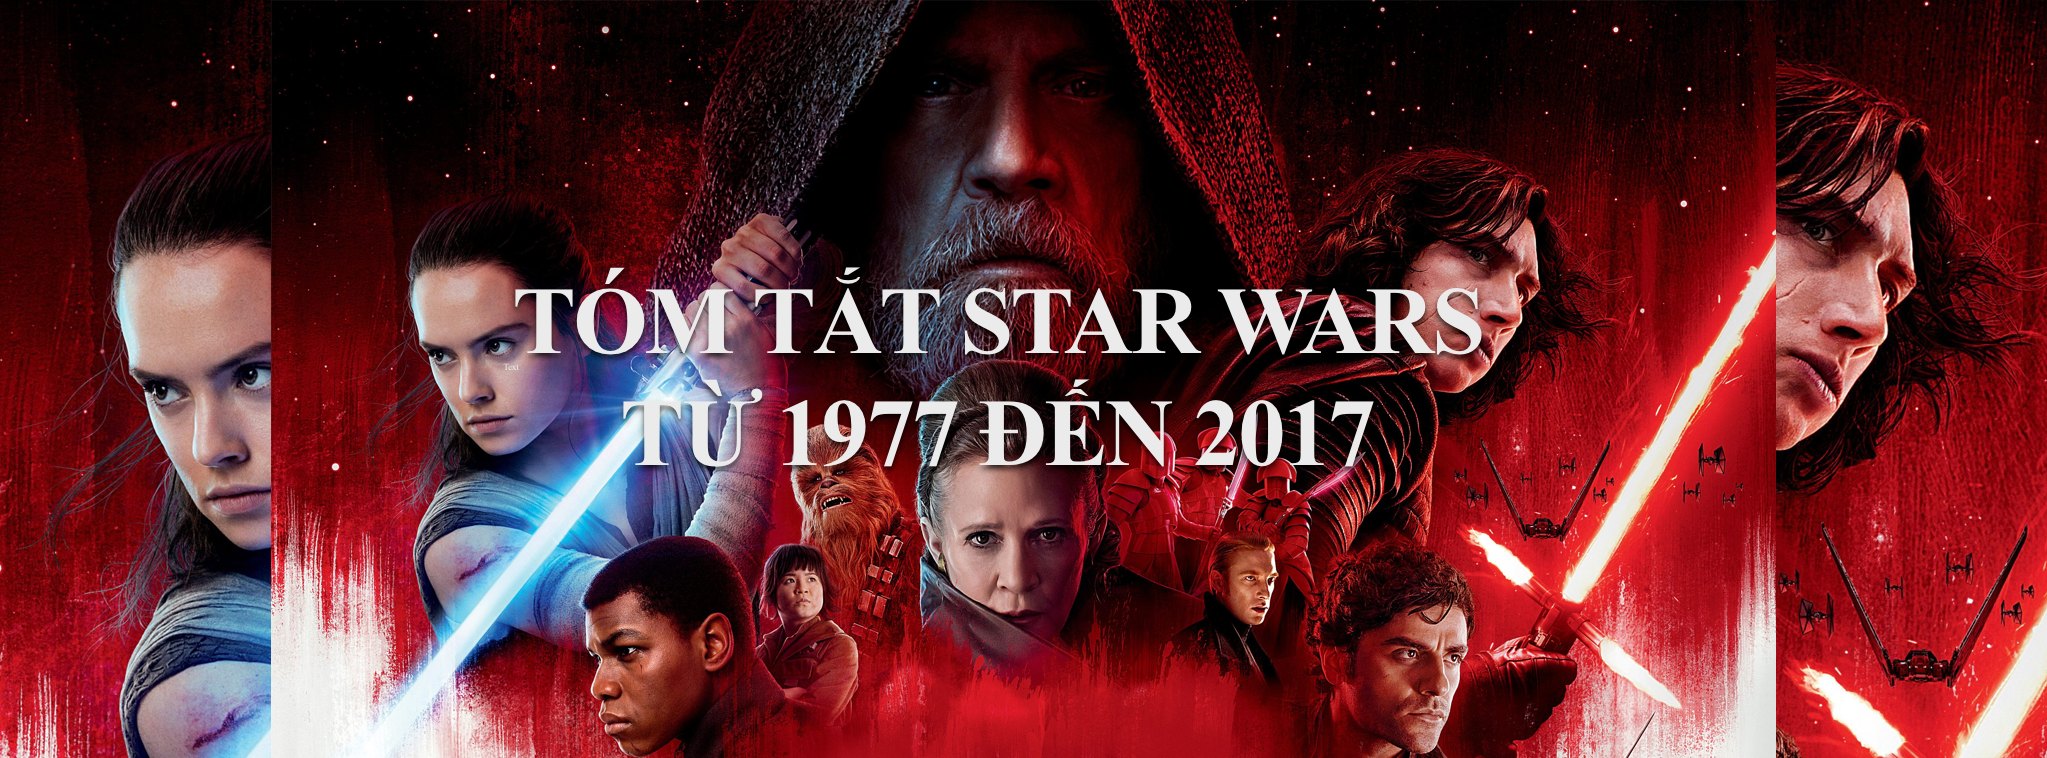 [Phim] Tóm tắt 7 tập phim cũ Star Wars: Đọc tóm tắt để đi xem tập 8 The Last Jedi cho dễ hiểu